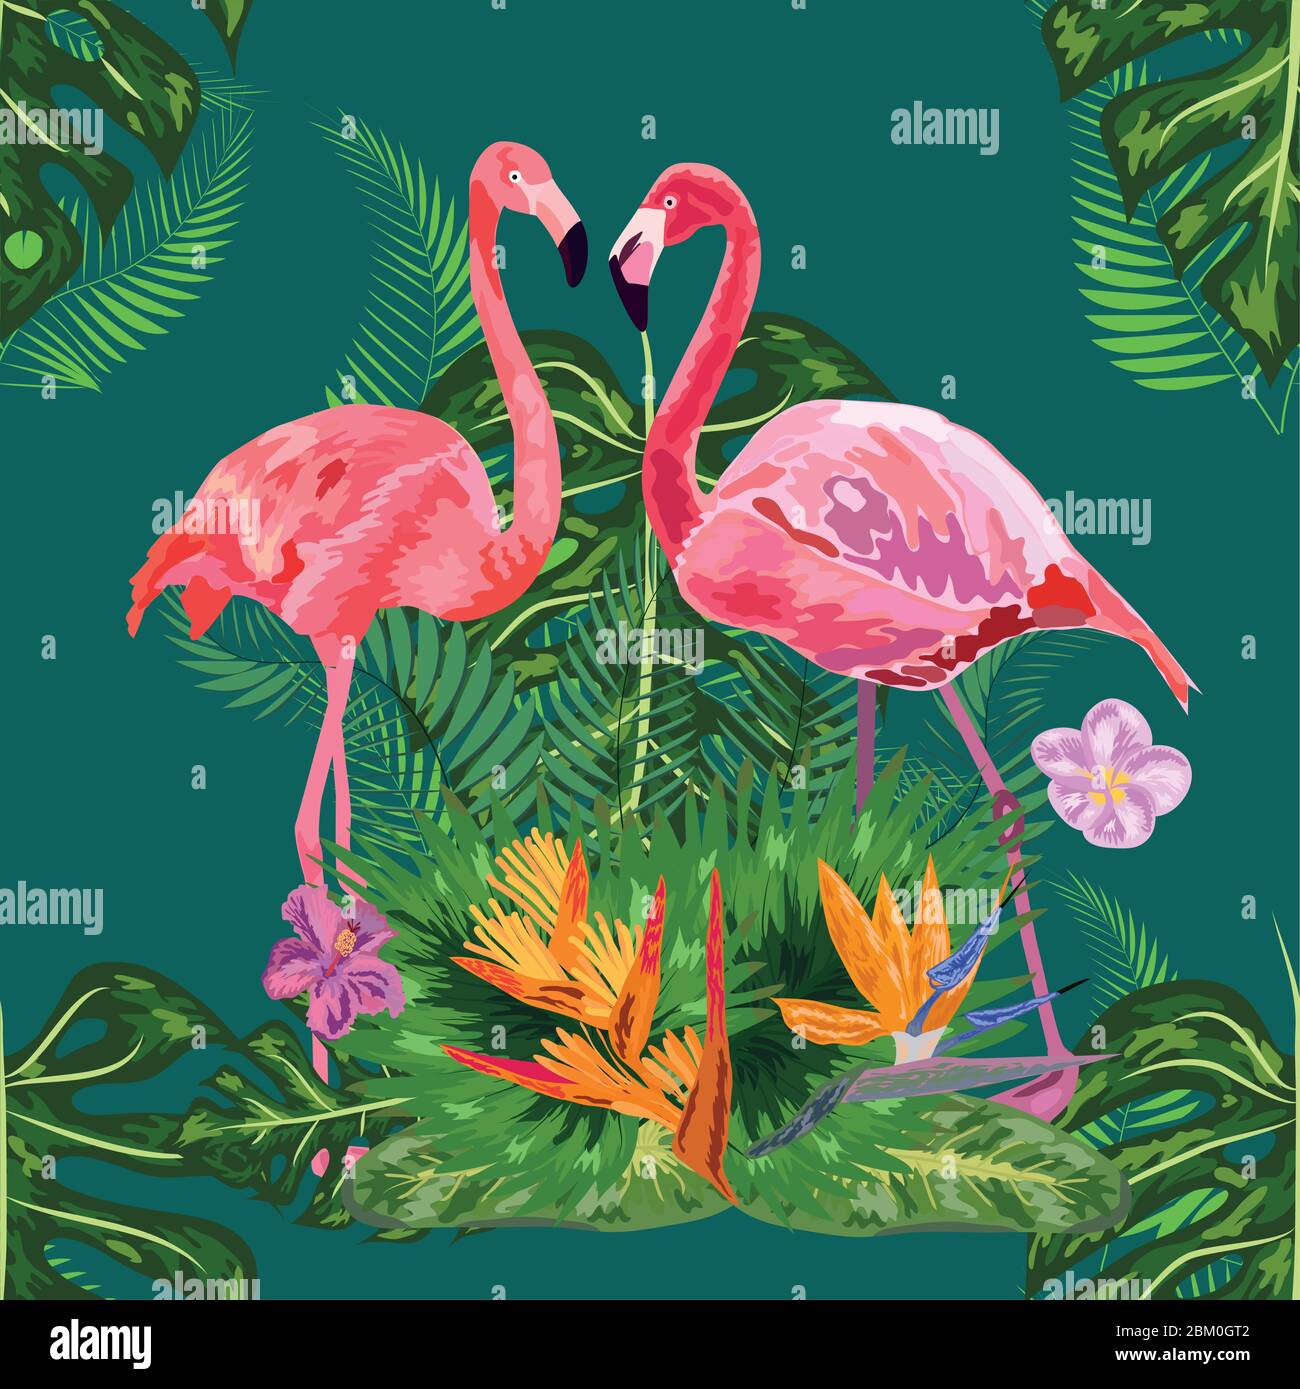 Leuchtend grüne tropische Dschungel Regenwald Palmenblätter. Rosa exotischen Flamingo watenden Vögel paar. Nahtlose Musterstruktur Stock Vektor